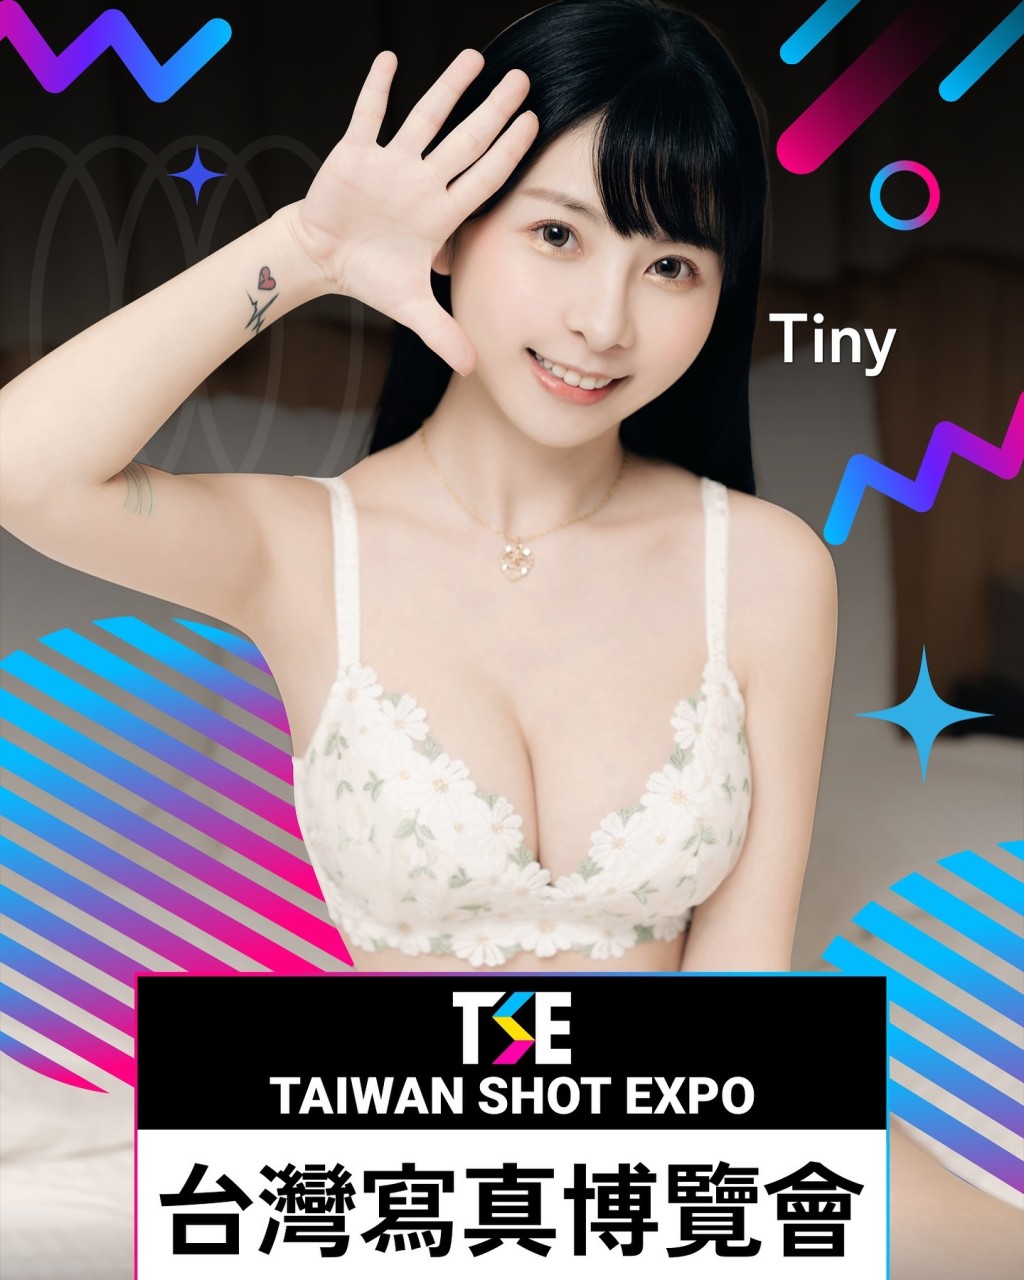 「田井虹」Tiny Lu是一名刚满30岁的台湾女网红。